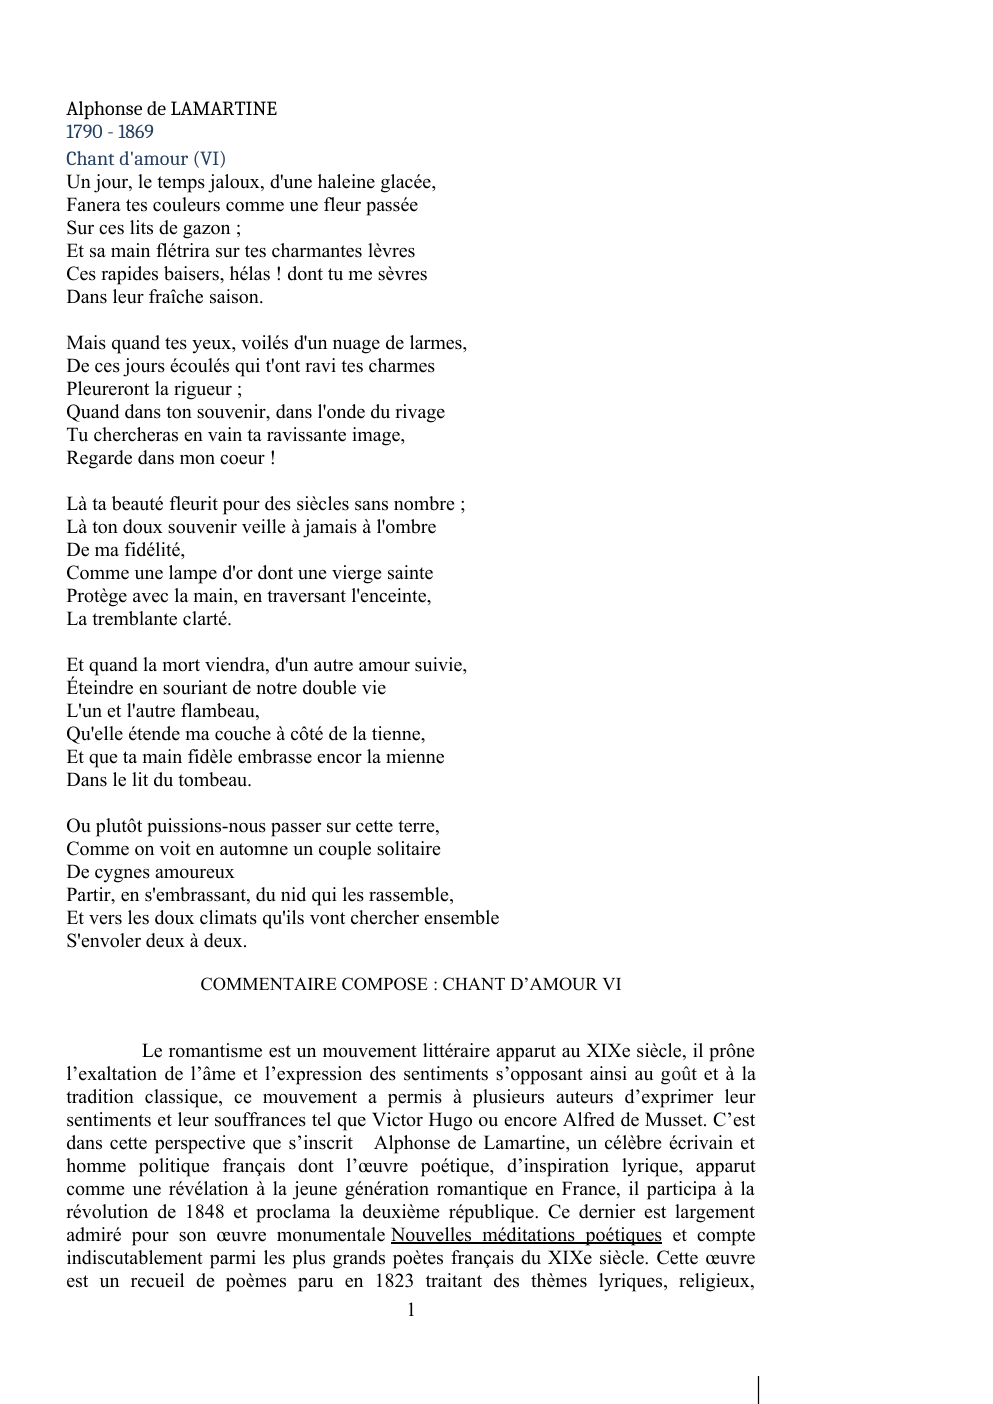 Prévisualisation du document Commentaire composé Chant d'amour VI, Lamartine